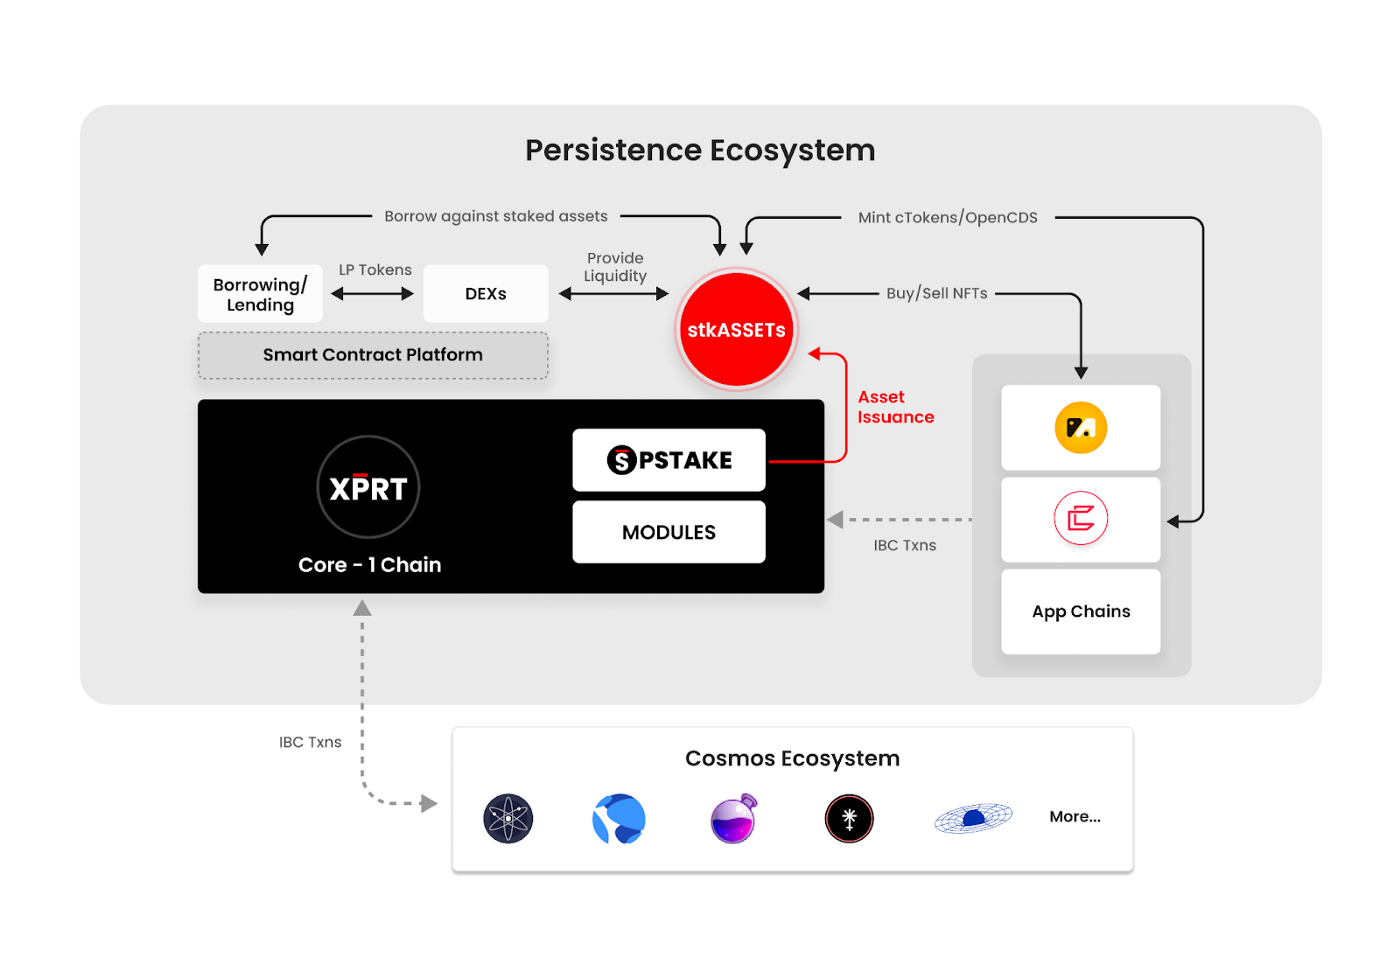 Persistence ecosystem diagram